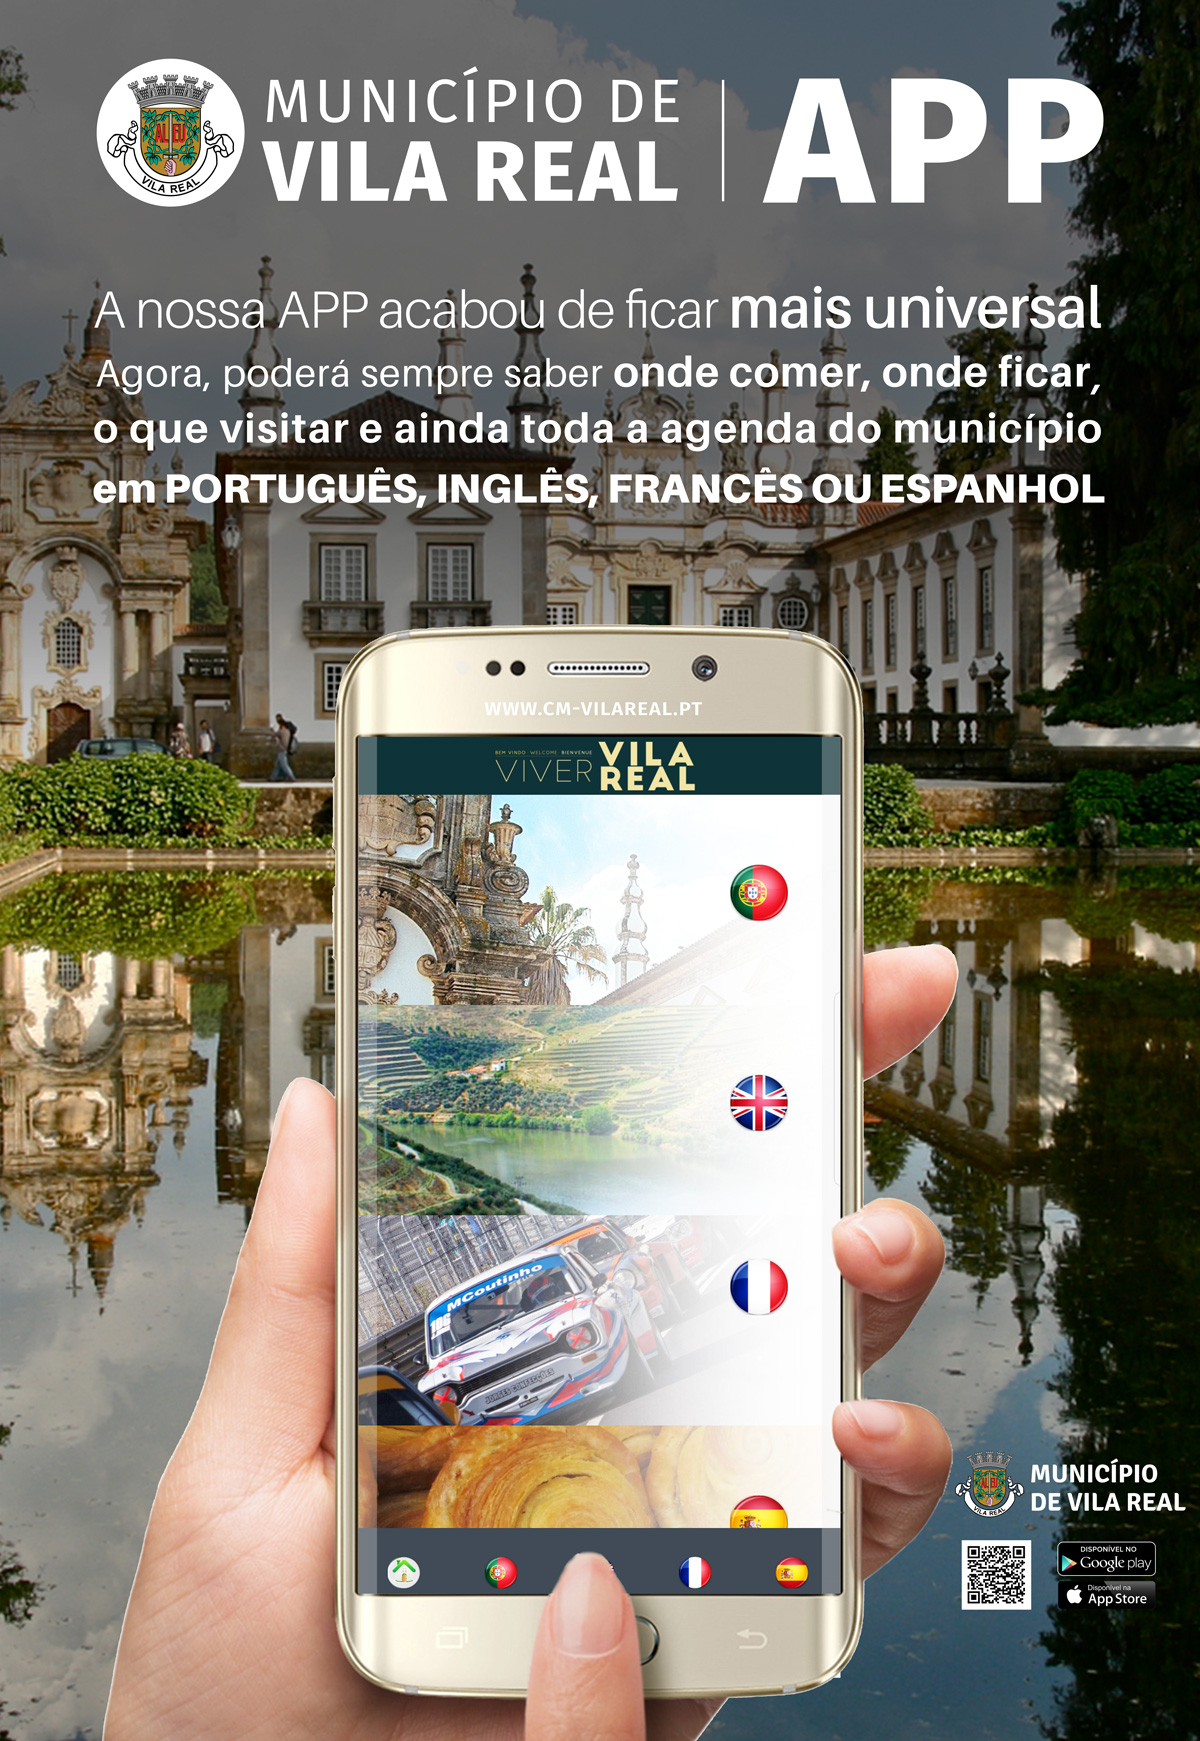 App do Município de Vila Real com informações turísticas